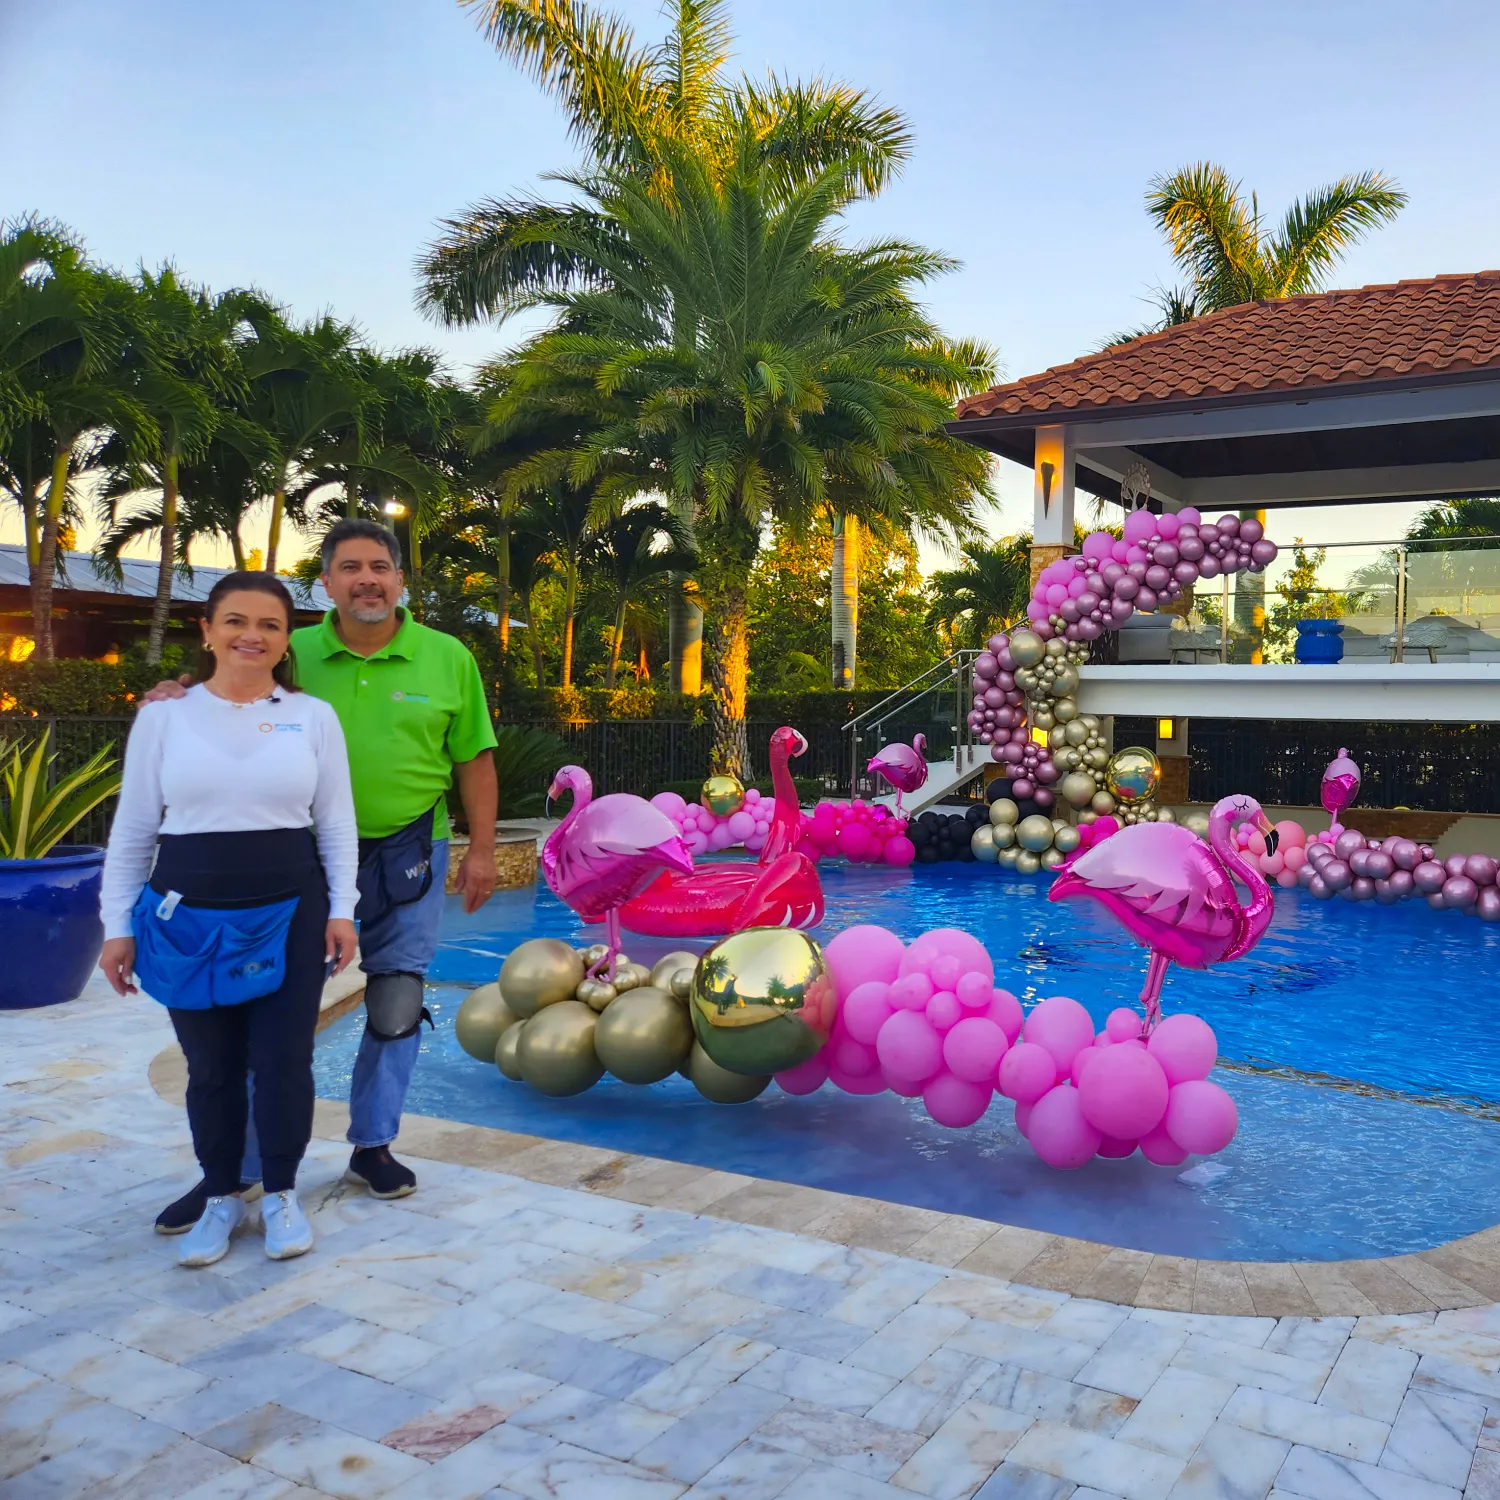 Decoración para fiesta en la piscina fantasía de burbujas y flamingo -  Balloons by Luz Paz - Academia Online